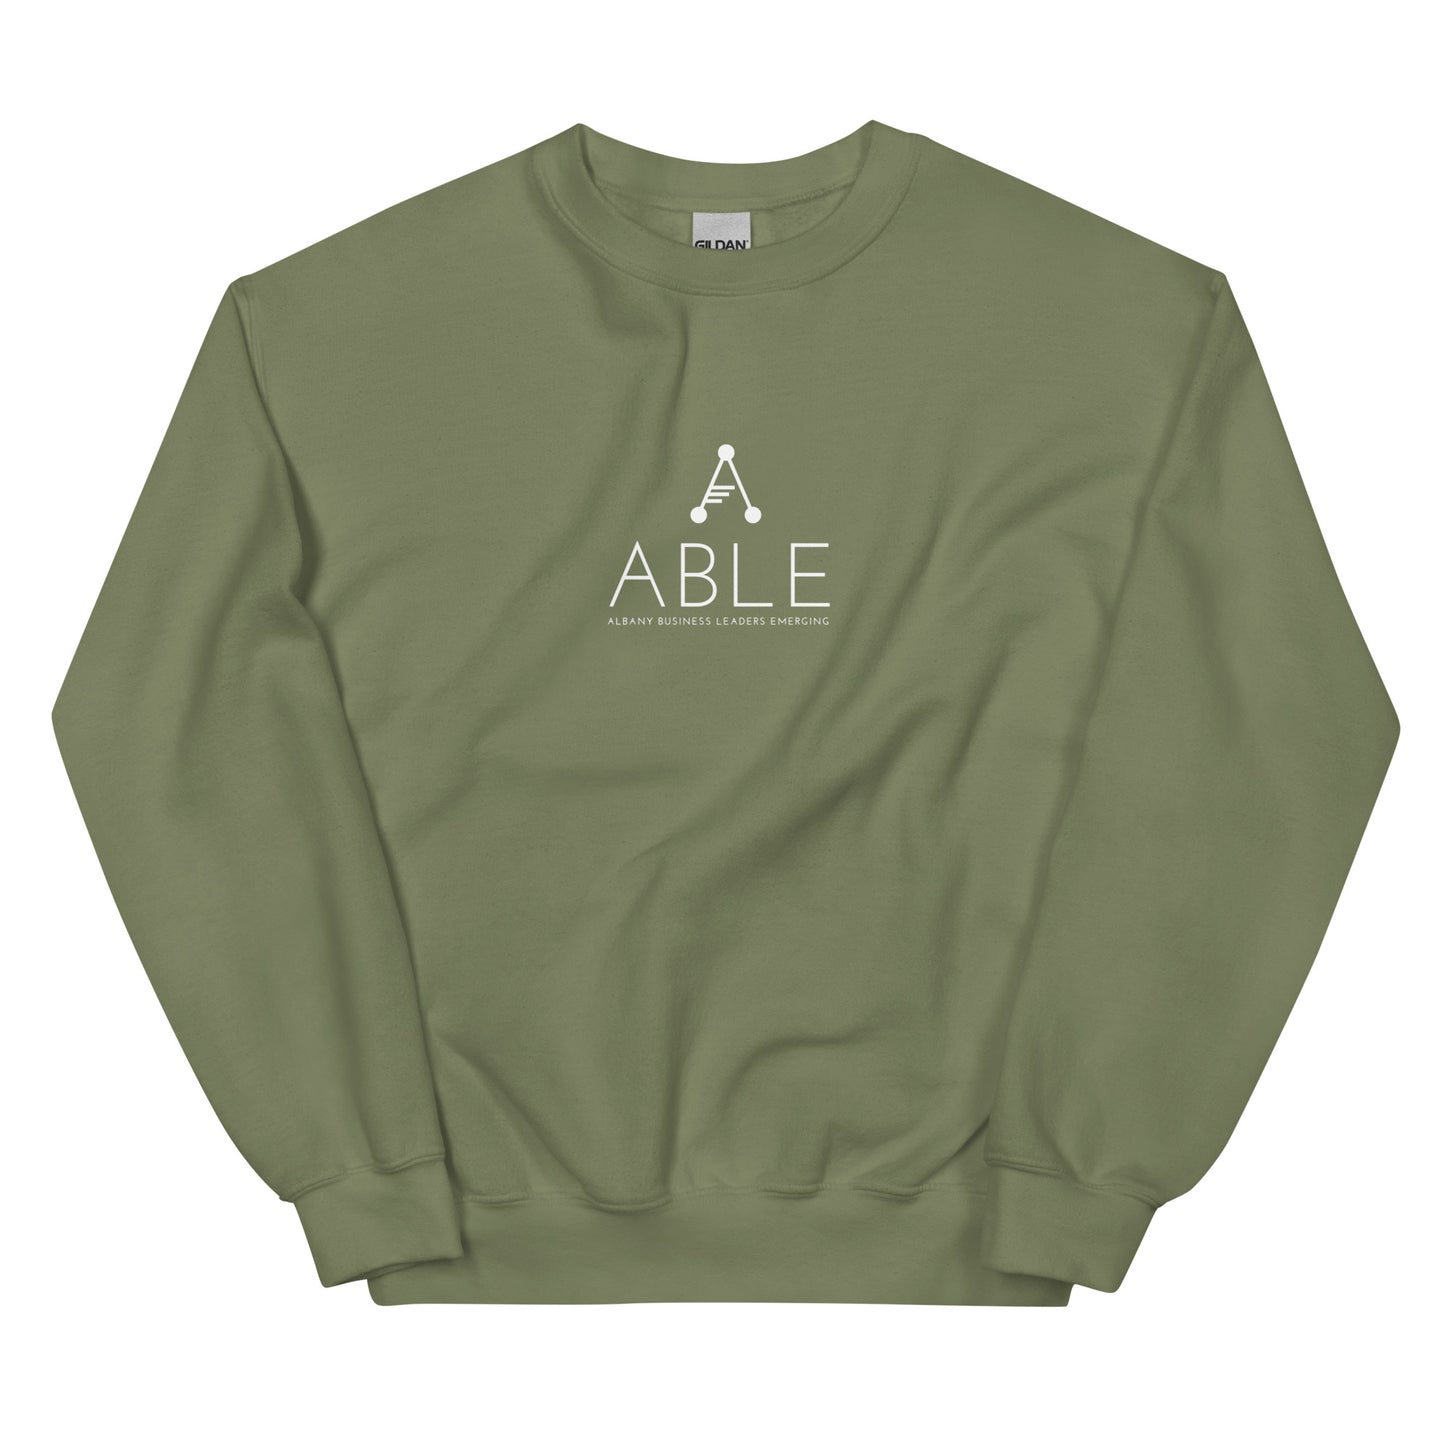 ABLE's Crewneck Sweatshirt